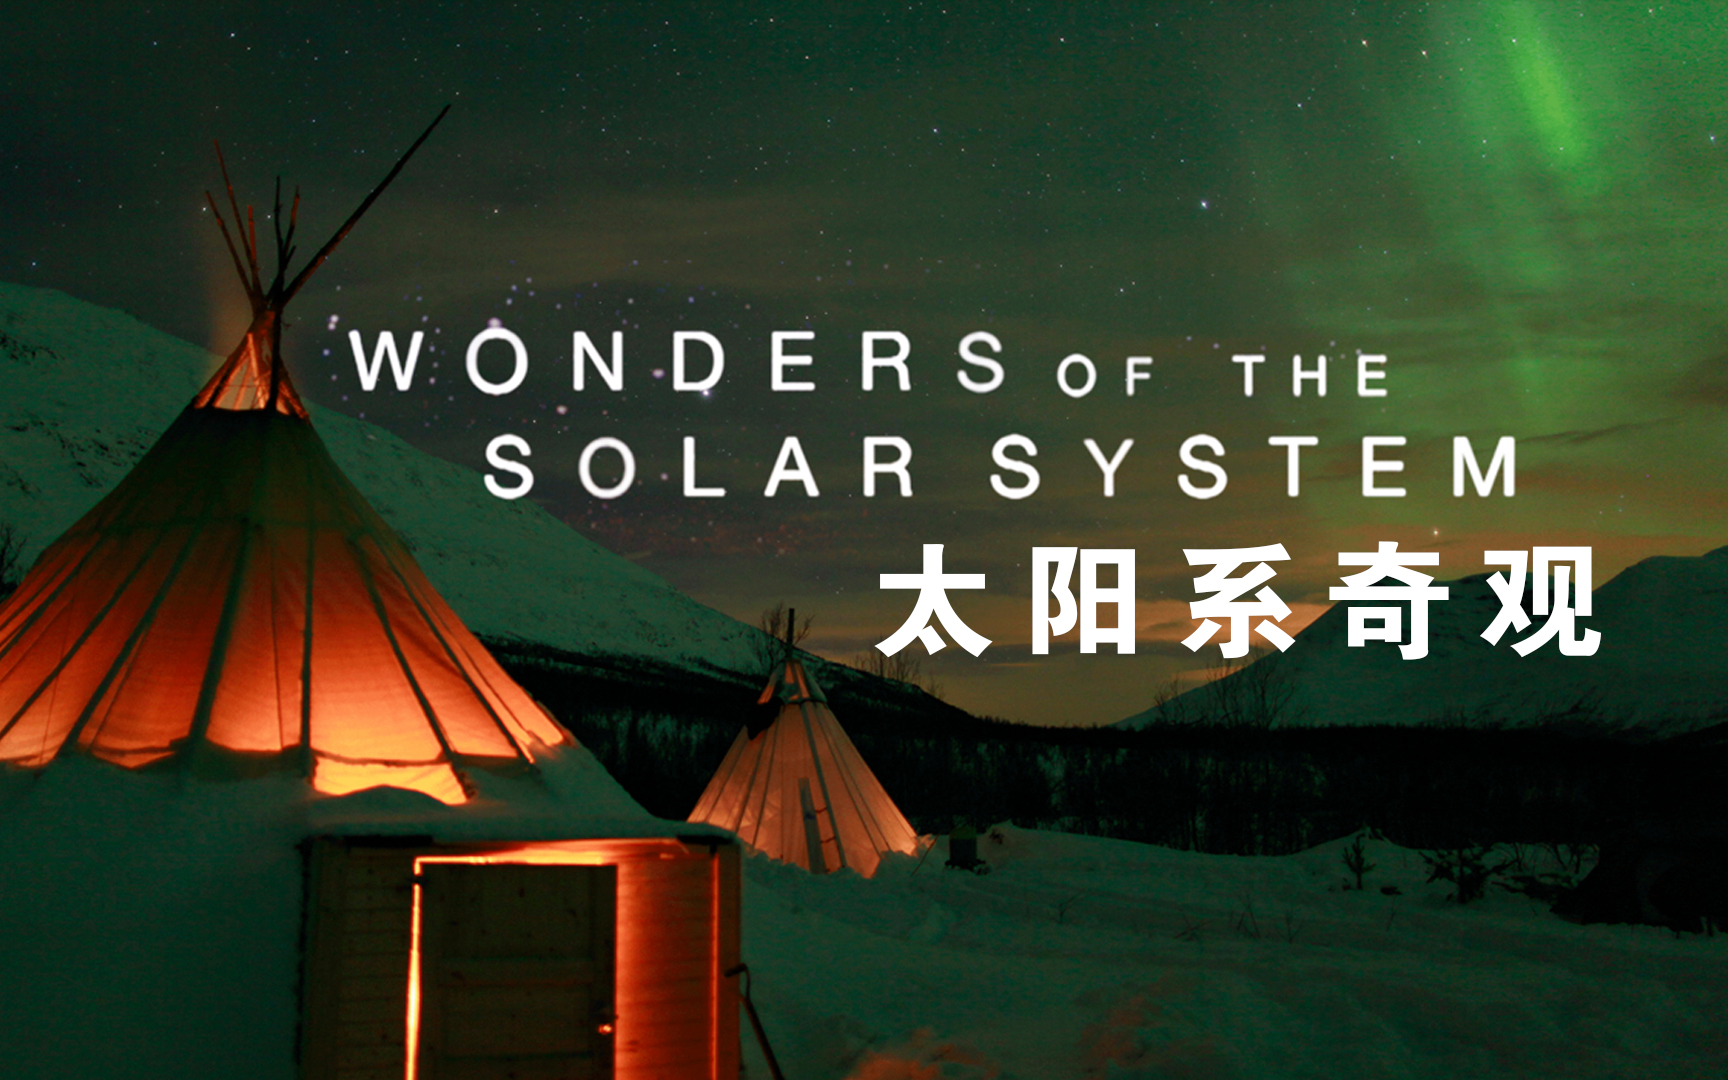 【纪录片】太阳系奇观-Wonders Of The Solar System  5